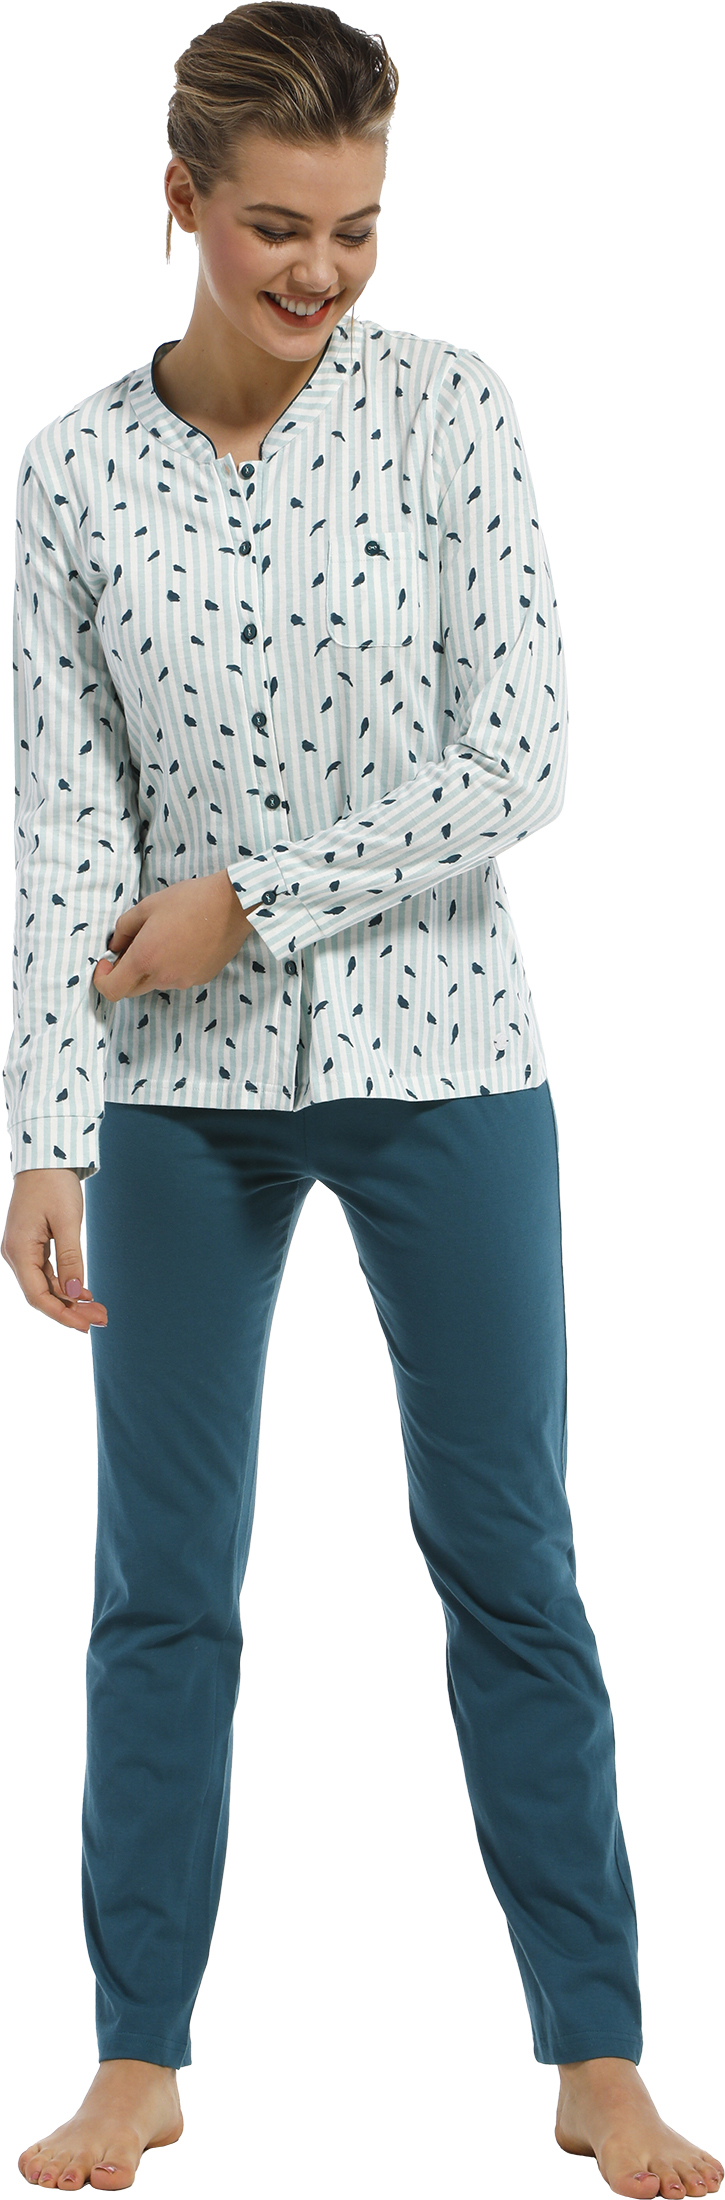 Dames pyjama doorknoop Pastunette 20212-145-6 - Turquoise - 52